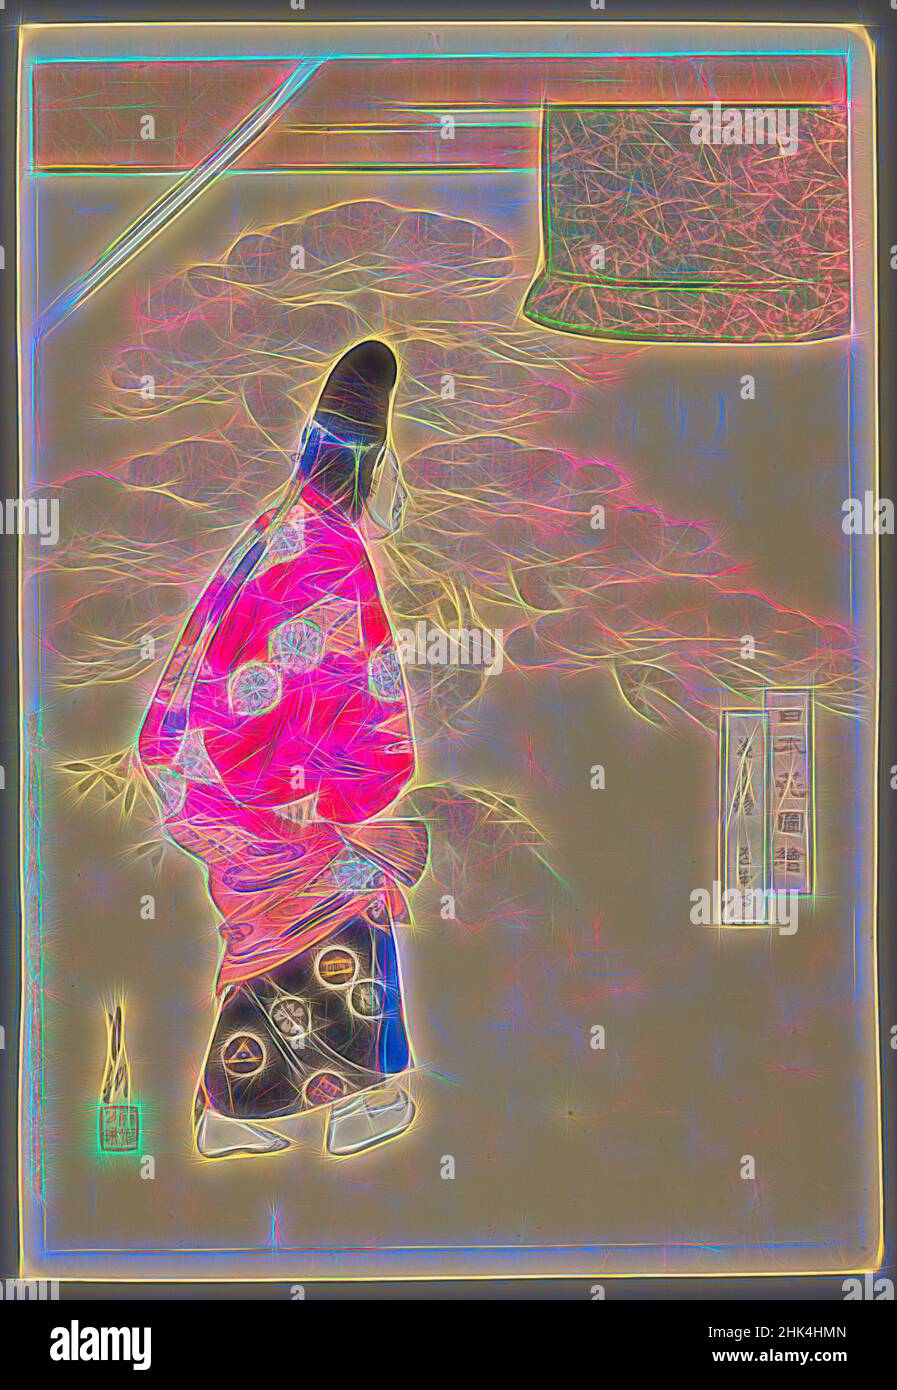 Inspiriert von Blumen und Glocke: Dōjōji Temple, aus der Serie Flowers of Japan, illustriert, aus der Serie Pictures of Flower Gardens, Ogata Gekko, japanisch, 1859-1920, Farbholzschnitt auf Papier, Japan, 1899, Meiji-Zeit, 13 7/16 x 9 1/4 Zoll, 34,1 x 23,5 cm, Maske, neu gestaltet von Artotop. Klassische Kunst neu erfunden mit einem modernen Twist. Design von warmen fröhlichen Leuchten der Helligkeit und Lichtstrahl Strahlkraft. Fotografie inspiriert von Surrealismus und Futurismus, umarmt dynamische Energie der modernen Technologie, Bewegung, Geschwindigkeit und Kultur zu revolutionieren Stockfoto